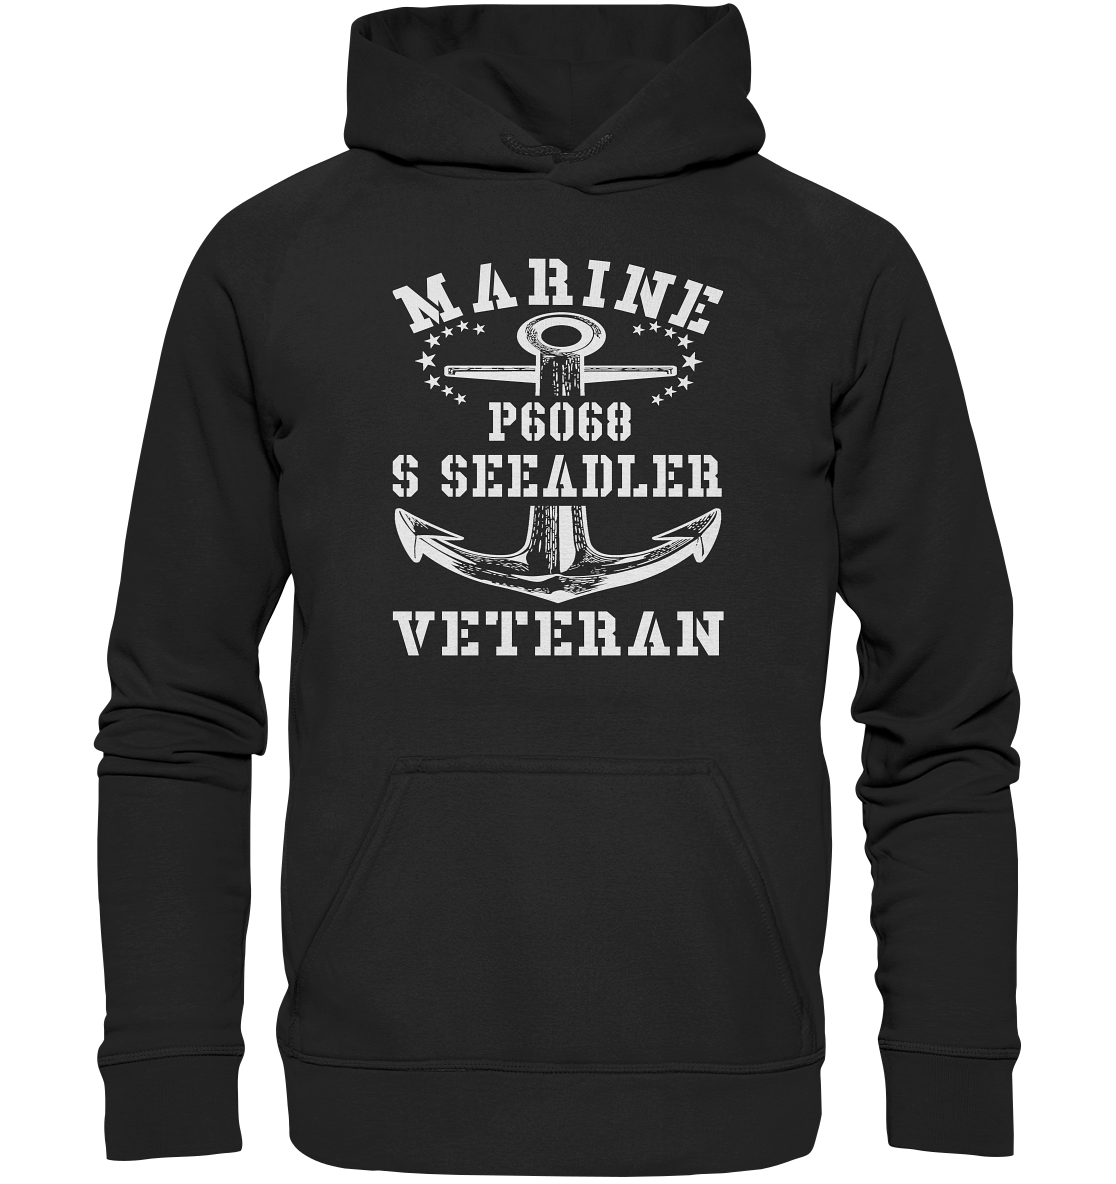 P6068 S SEEADLER Marine Veteran - Basic Unisex Hoodie